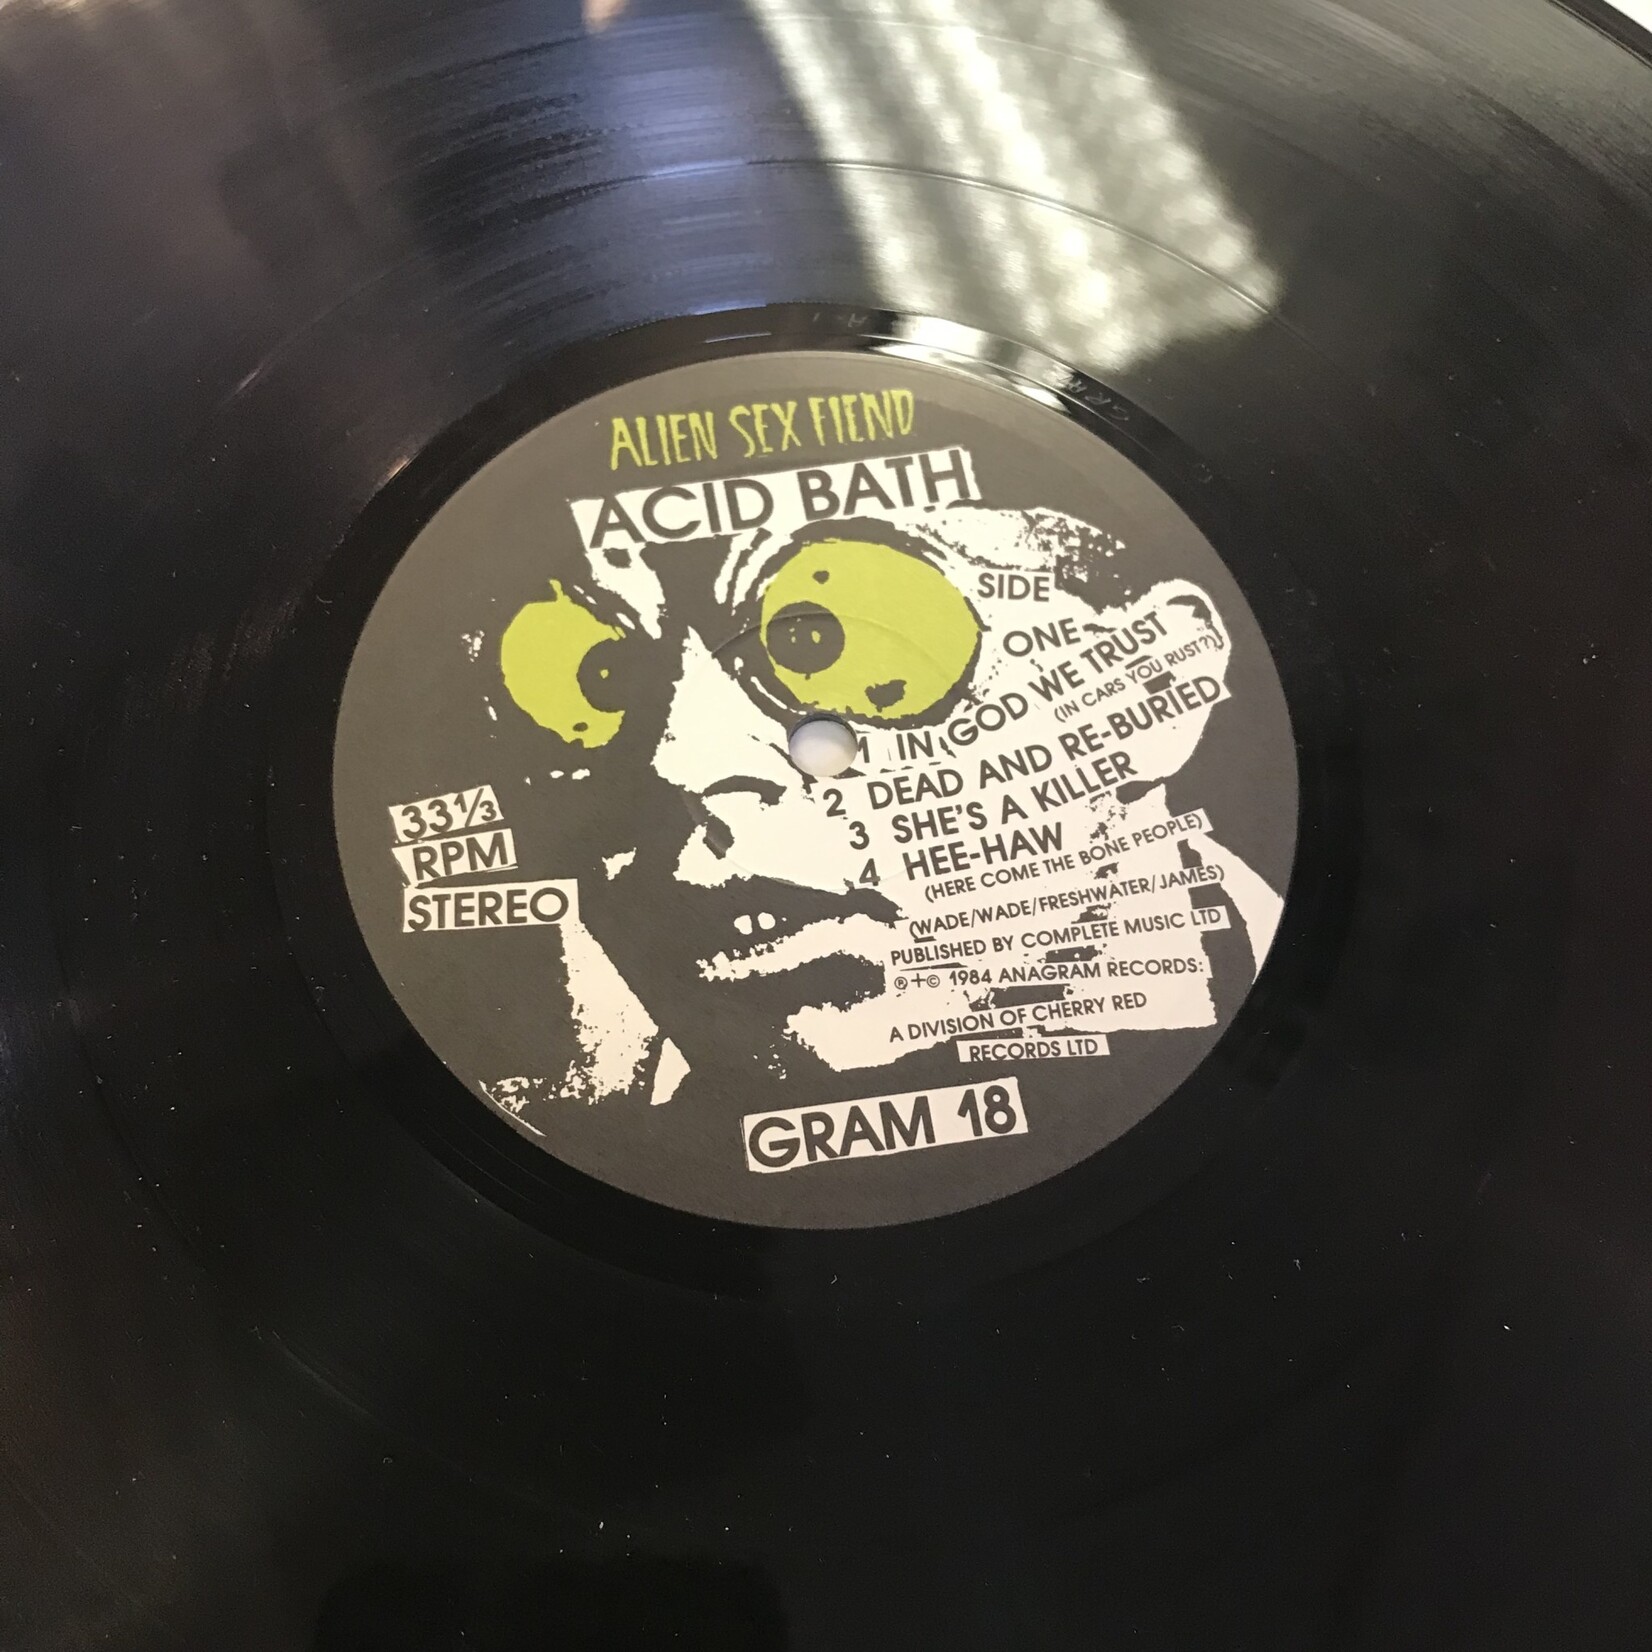 Alien Sex Fiend - Acid Bath - GRAM18 - Vinyl LP (USED)